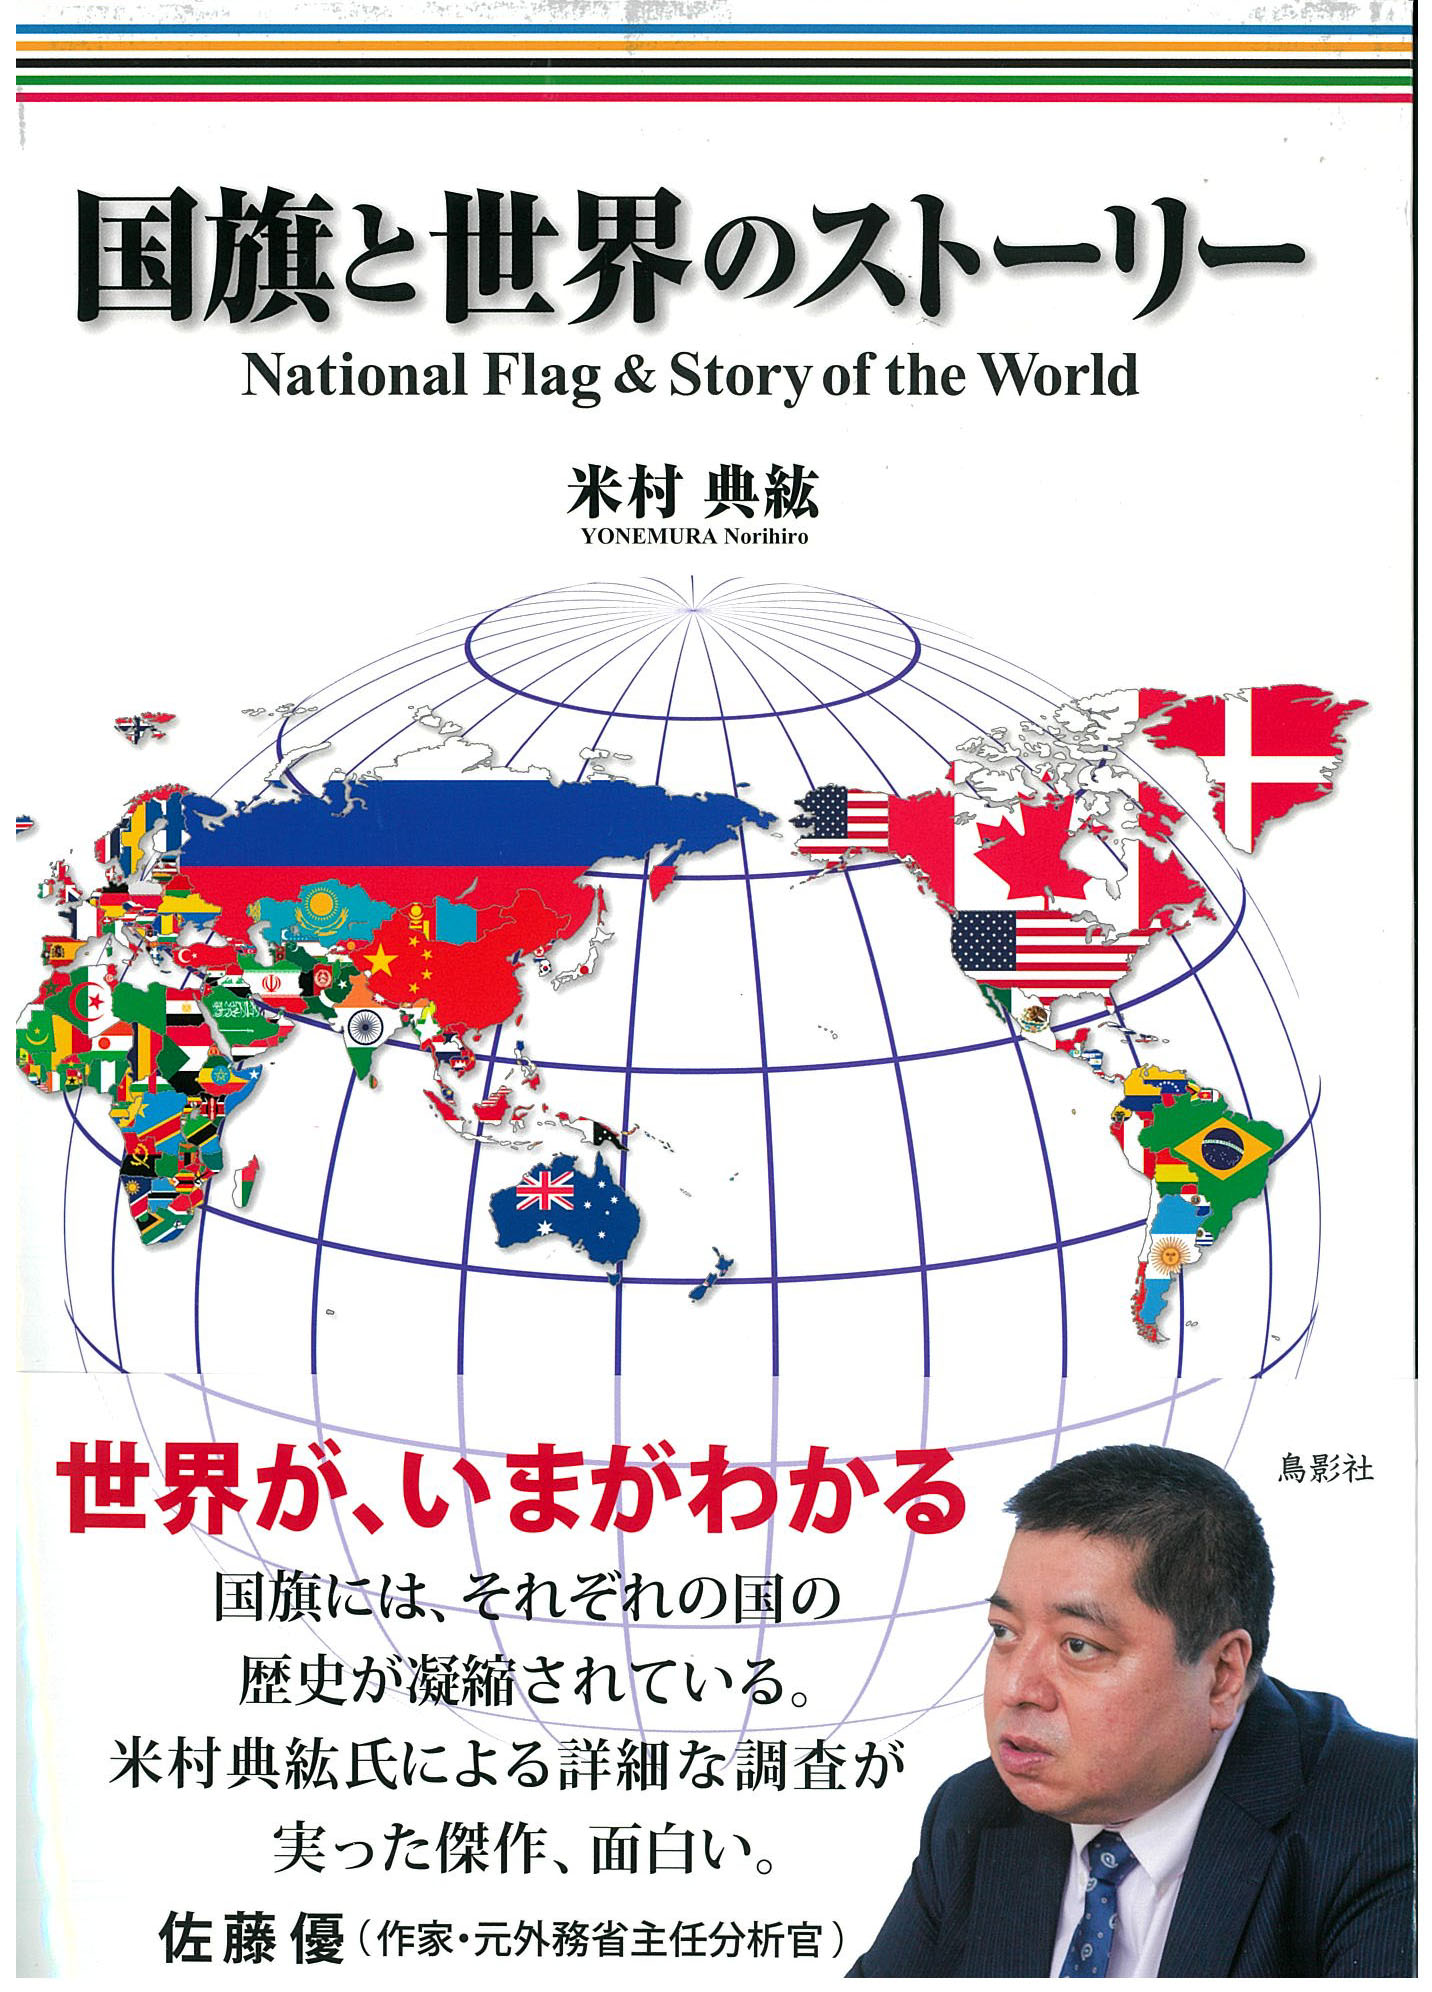 著者 米村典絋氏の新刊「国旗と世界のストーリー」の中でAIA・心の冒険が紹介されました